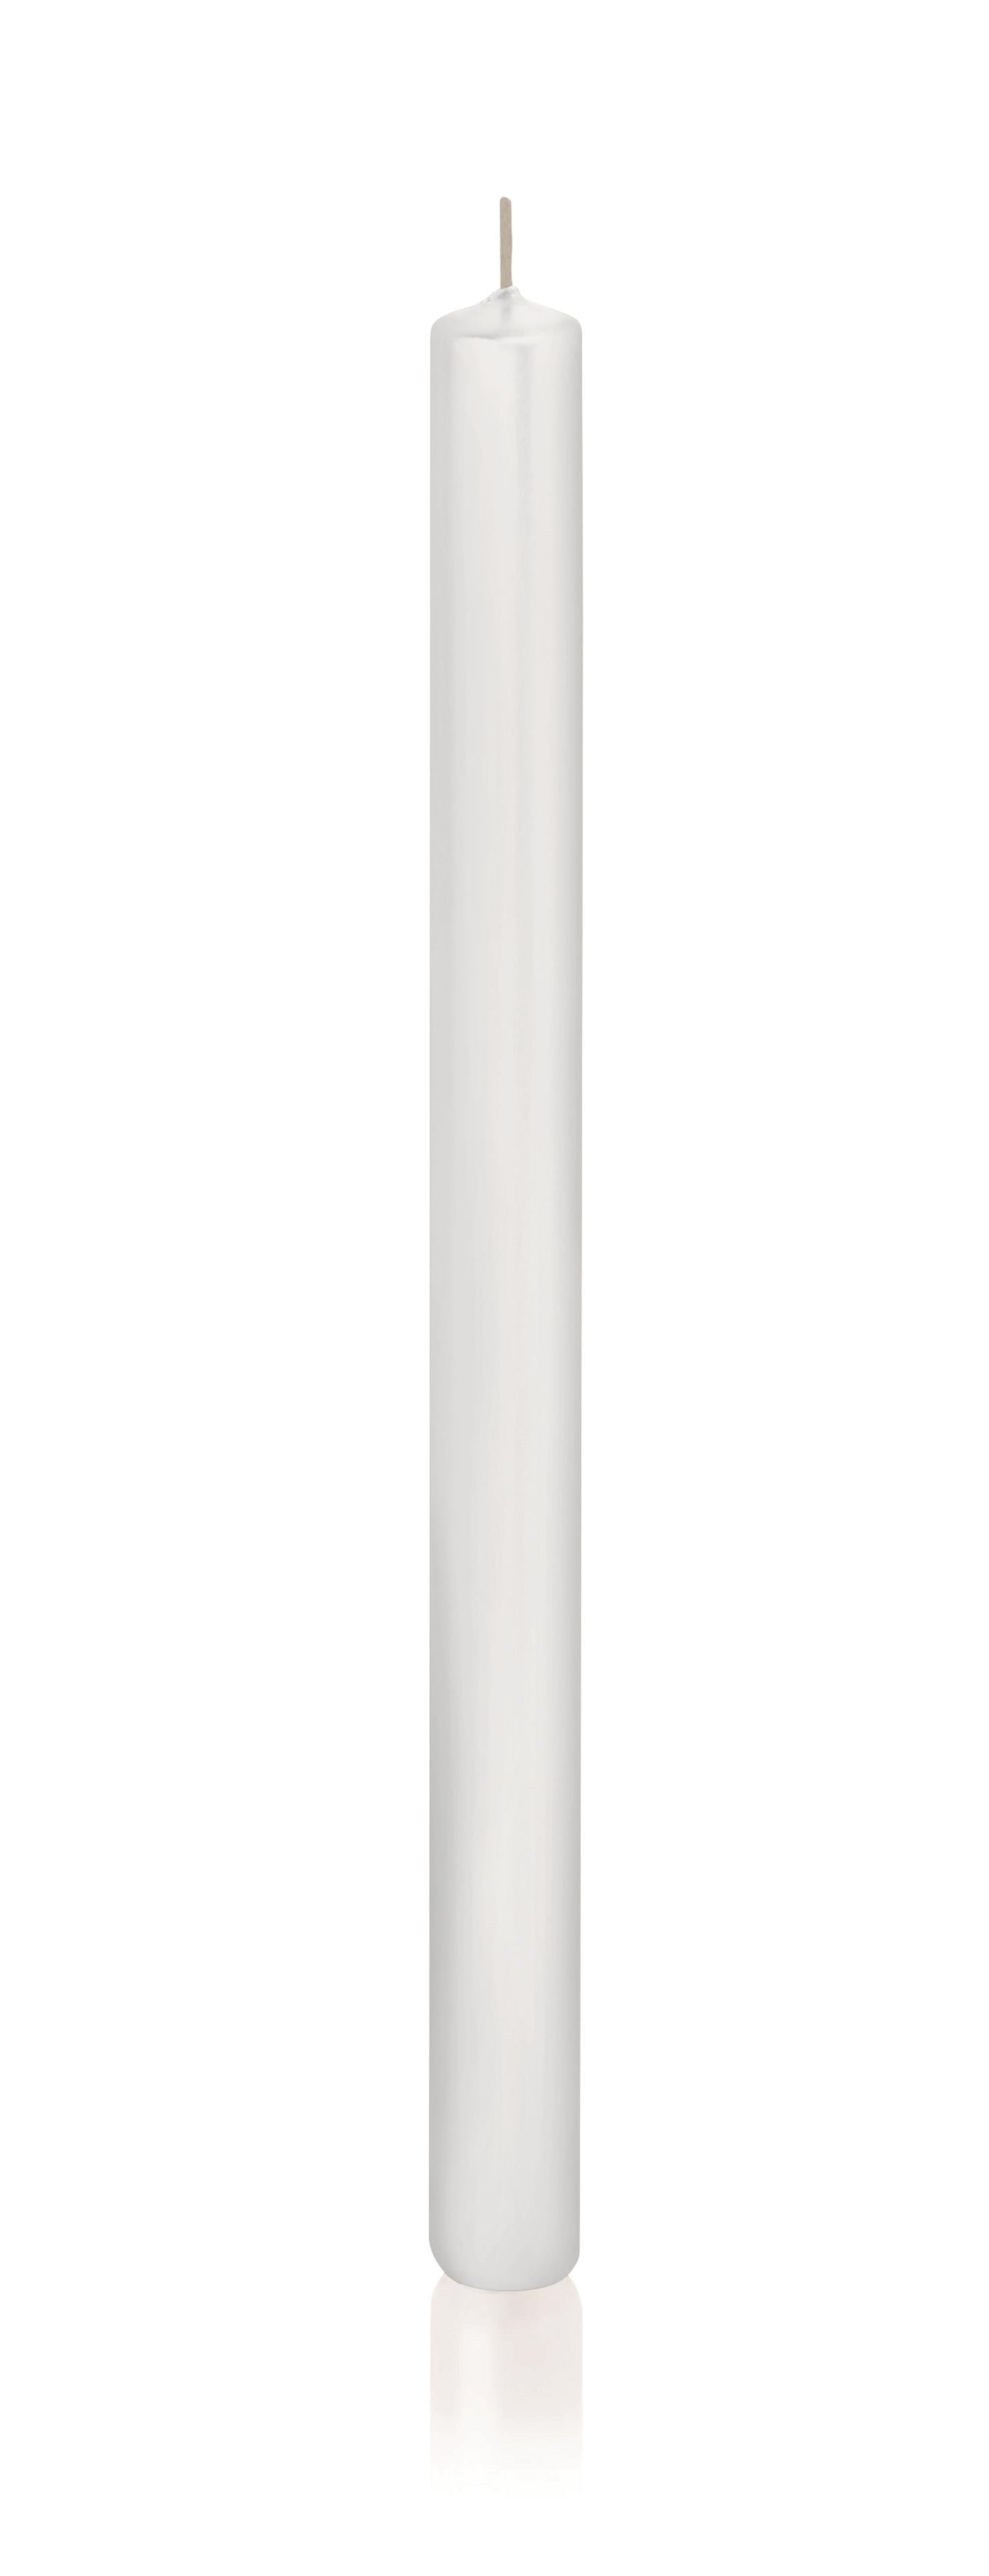 6x Stabkerzen in Cellophan 350/23mm (Weiß)